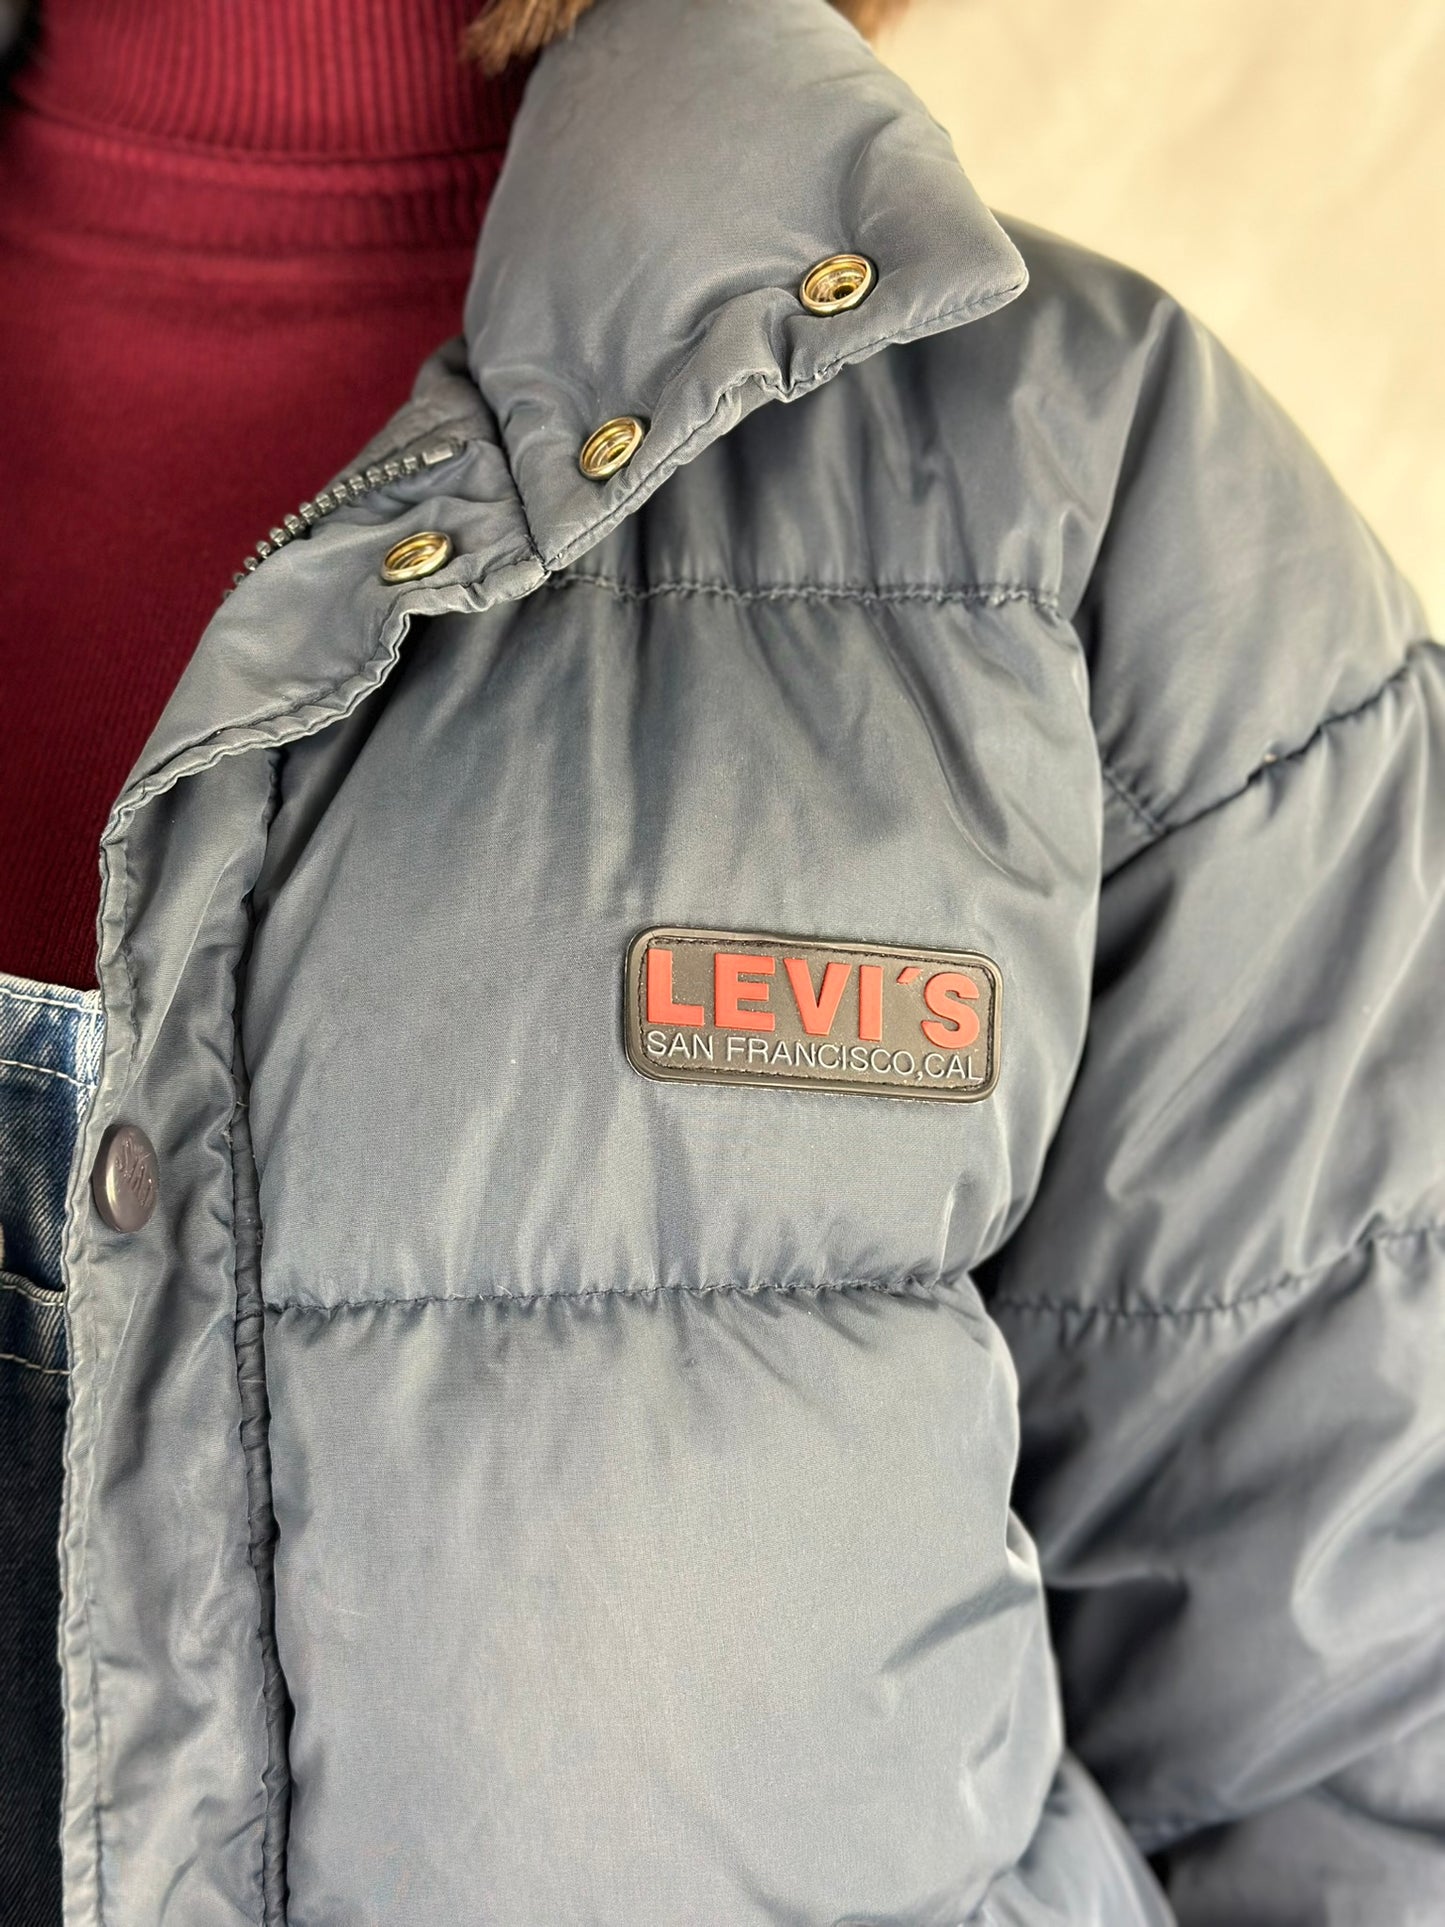 Levis Jacket